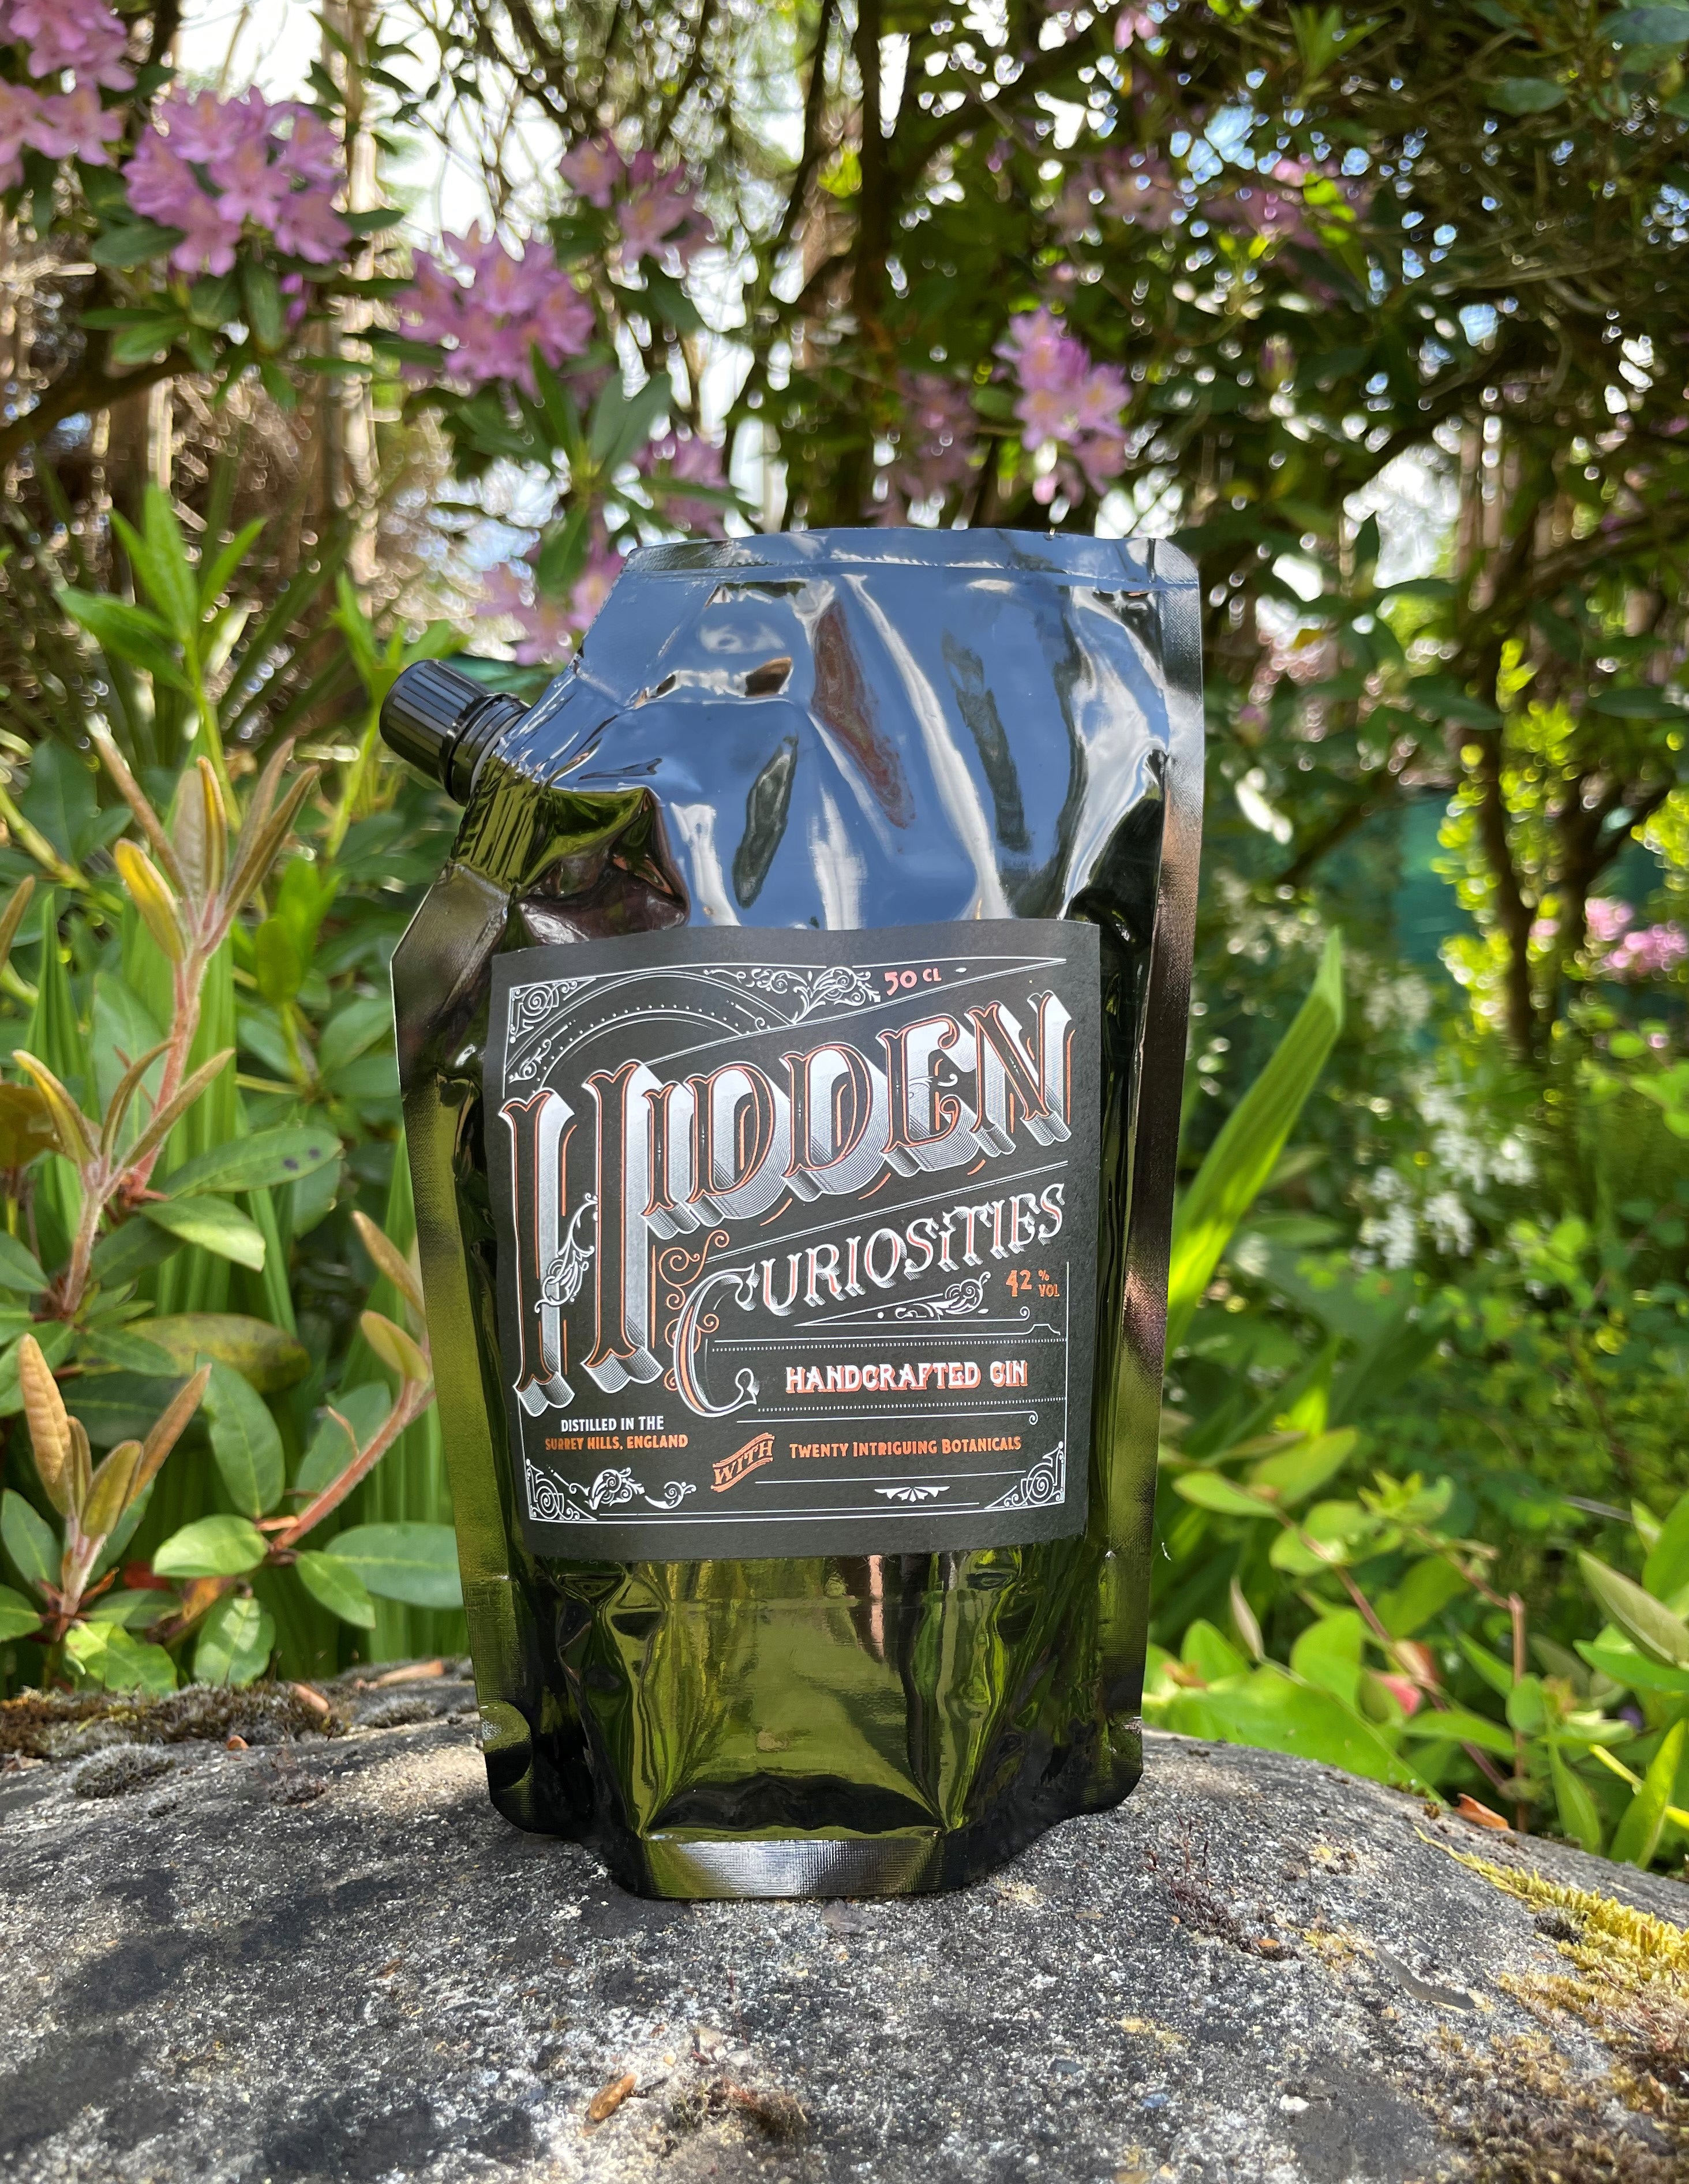 Hidden Curiosities Aromatic London Dry Gin Batch No. 7 Refill Pouch